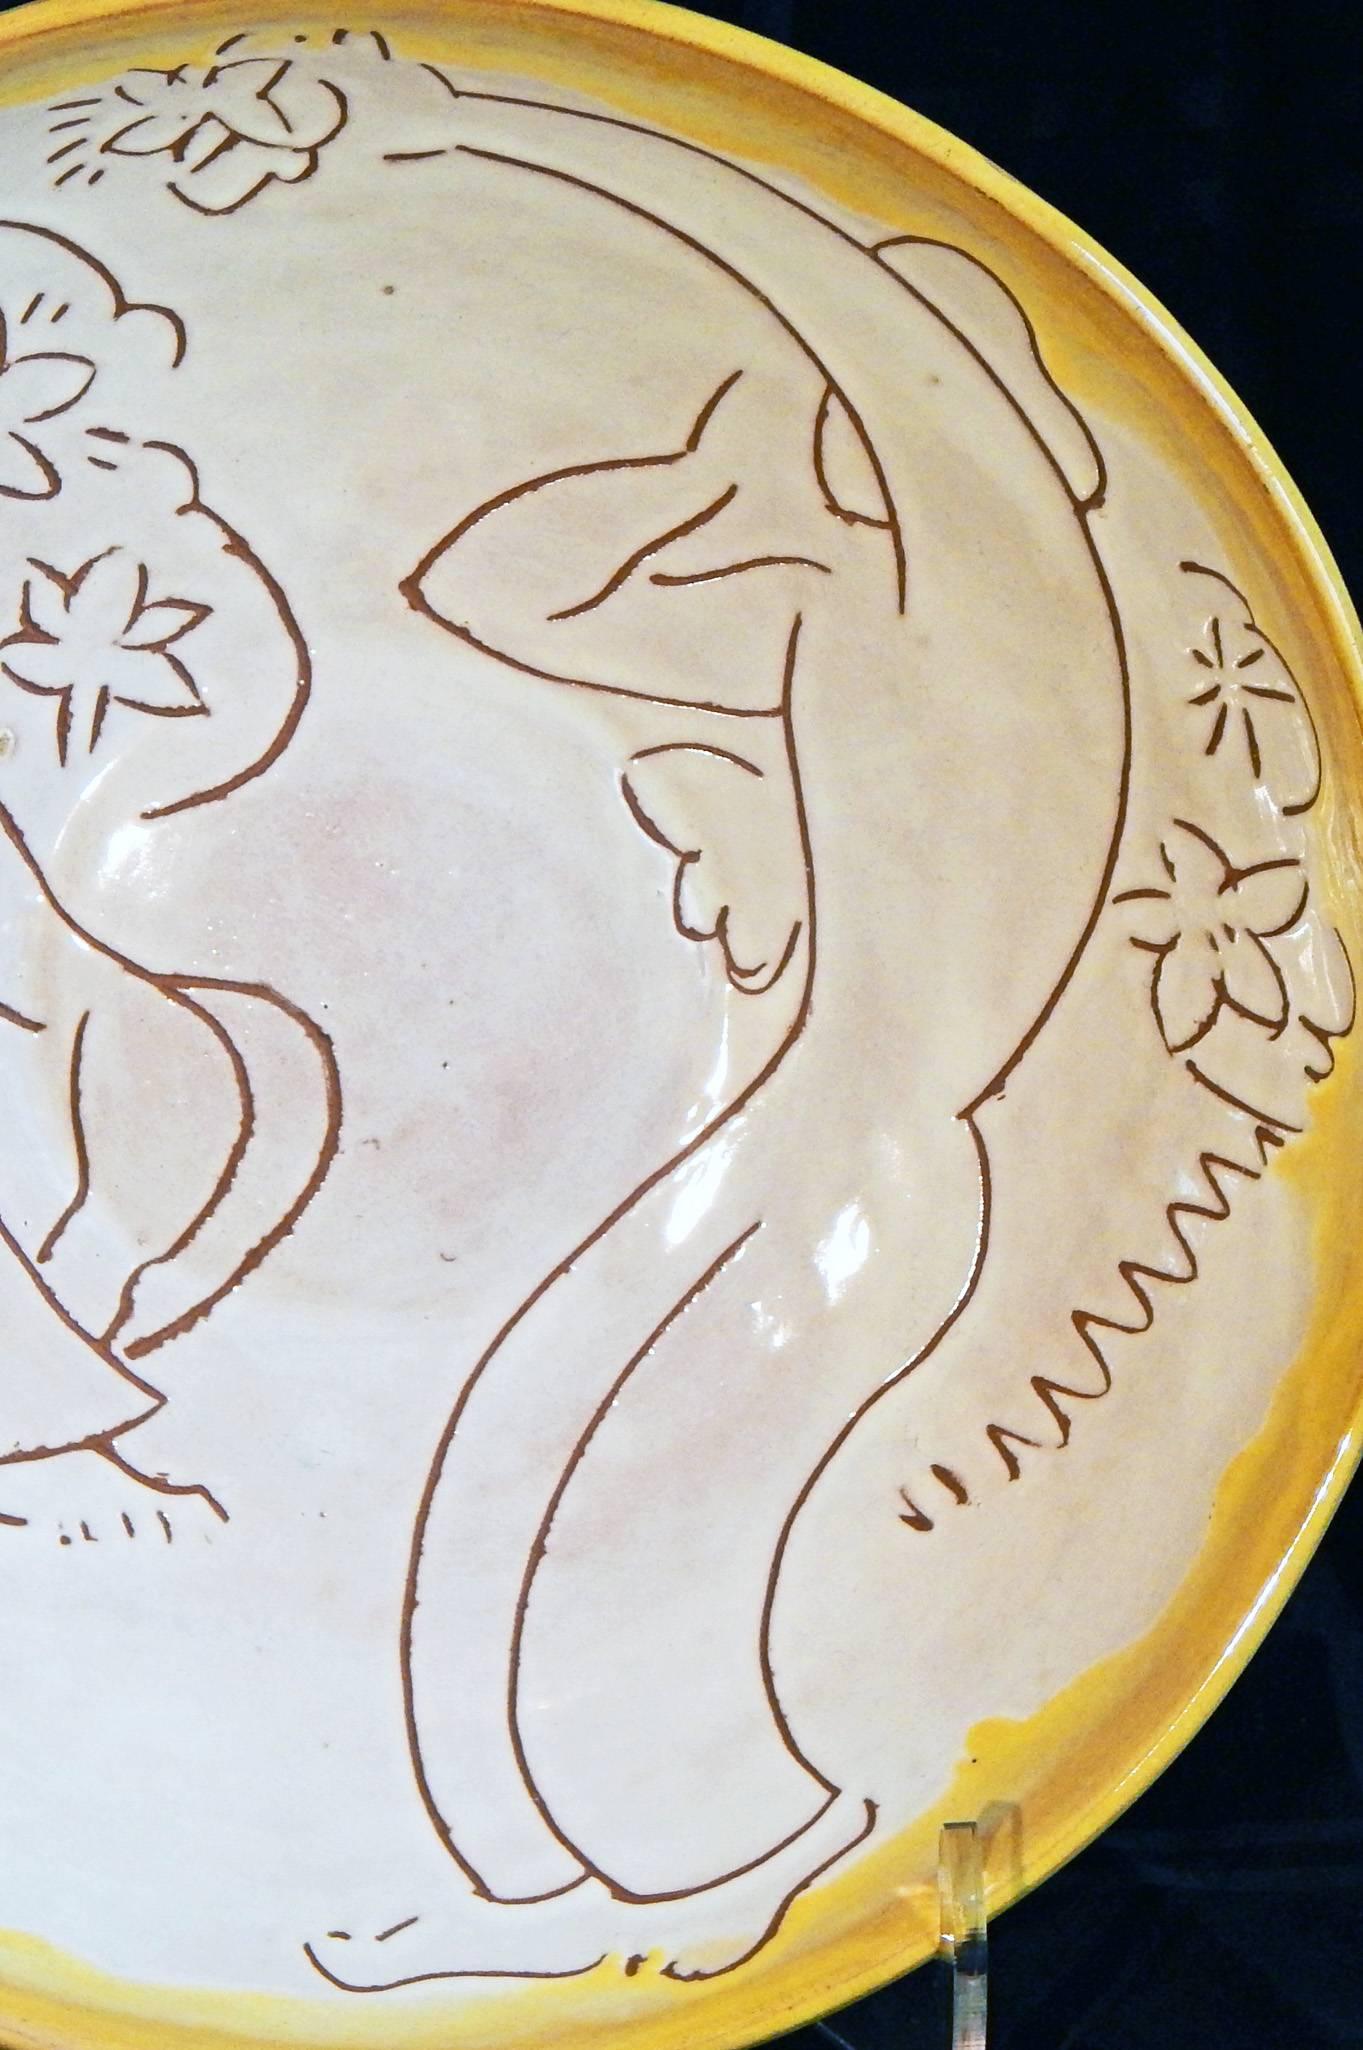 Diese große und tiefe Keramikschale mit Sgraffitodekor ist eindeutig von Matisse und anderen europäischen Modernisten beeinflusst. Sie zeigt einen weiblichen Akt und einen sitzenden Mann inmitten einer Reihe von Blumenmotiven, die von einer